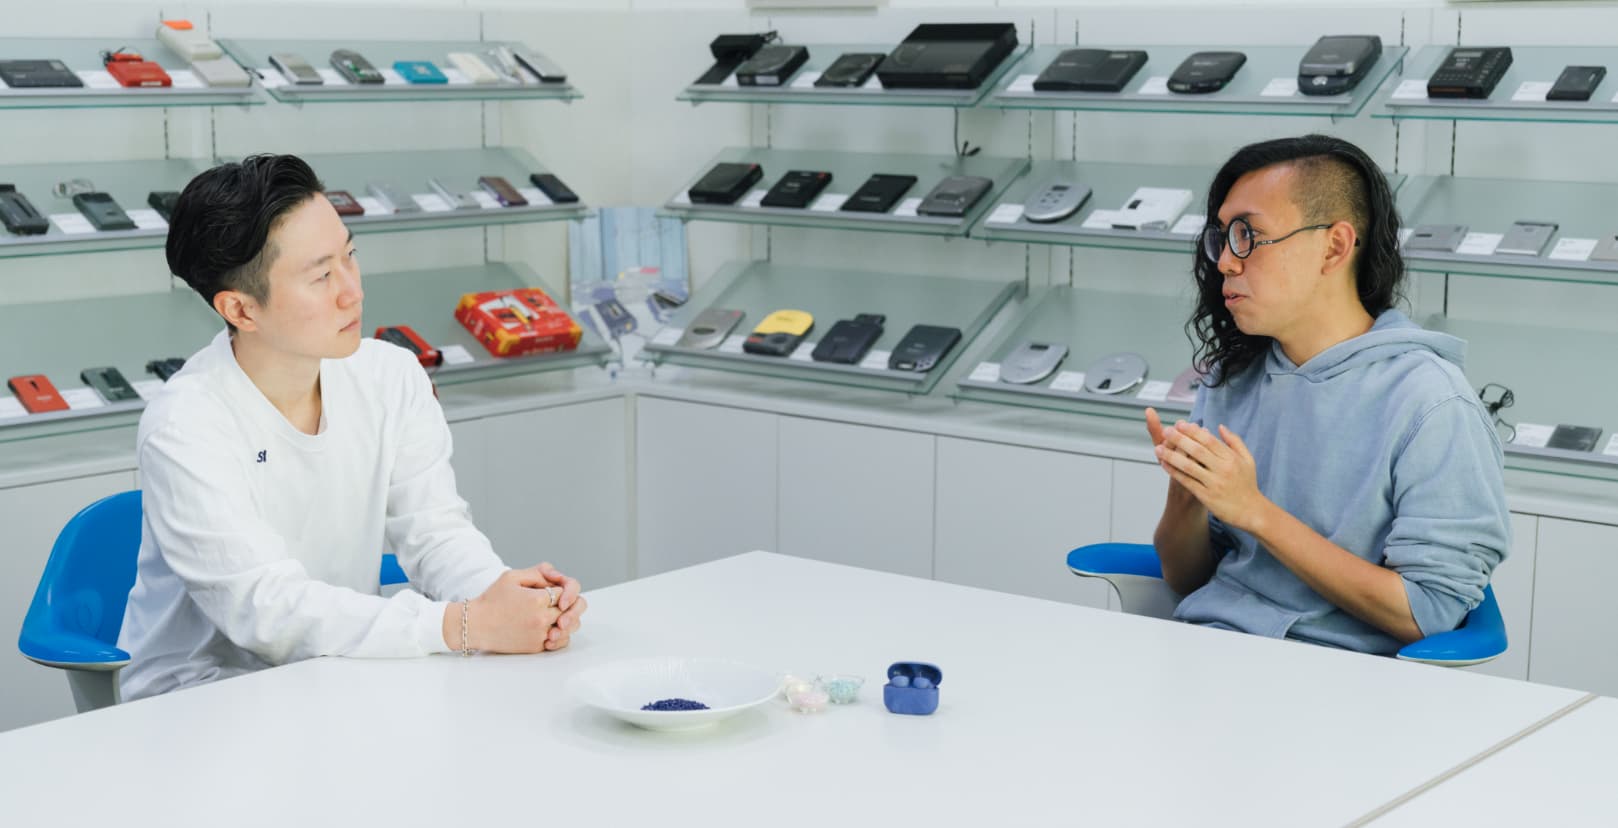 本坊健一郎さんと加藤功将さんが、再生プラスチックを用いた素材を手元に、向かい合って座り、真面目に話し合っている写真。